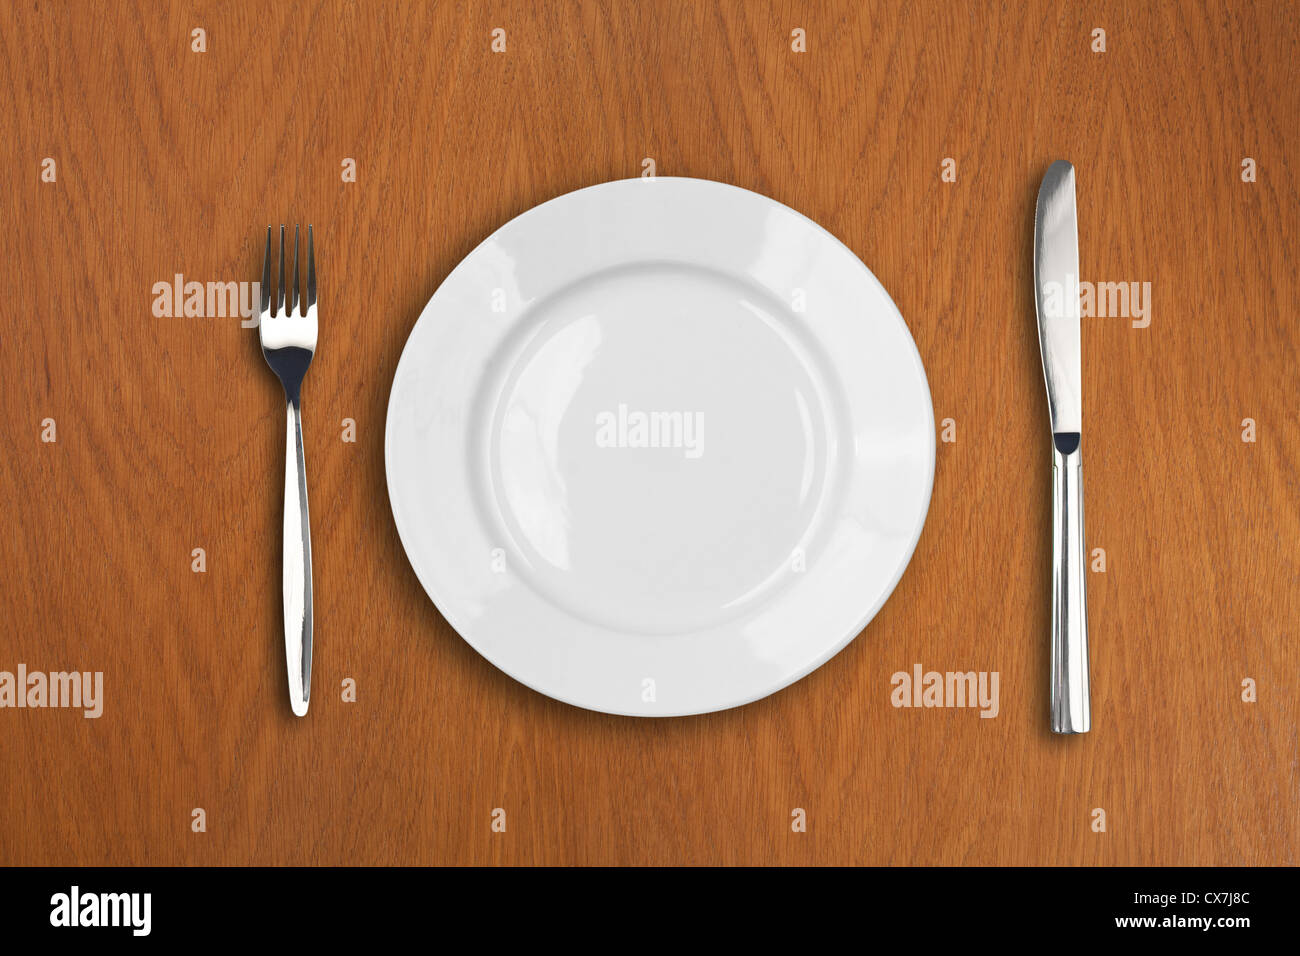 Plaque blanche ronde, couteau et fourchette sur table en bois Banque D'Images